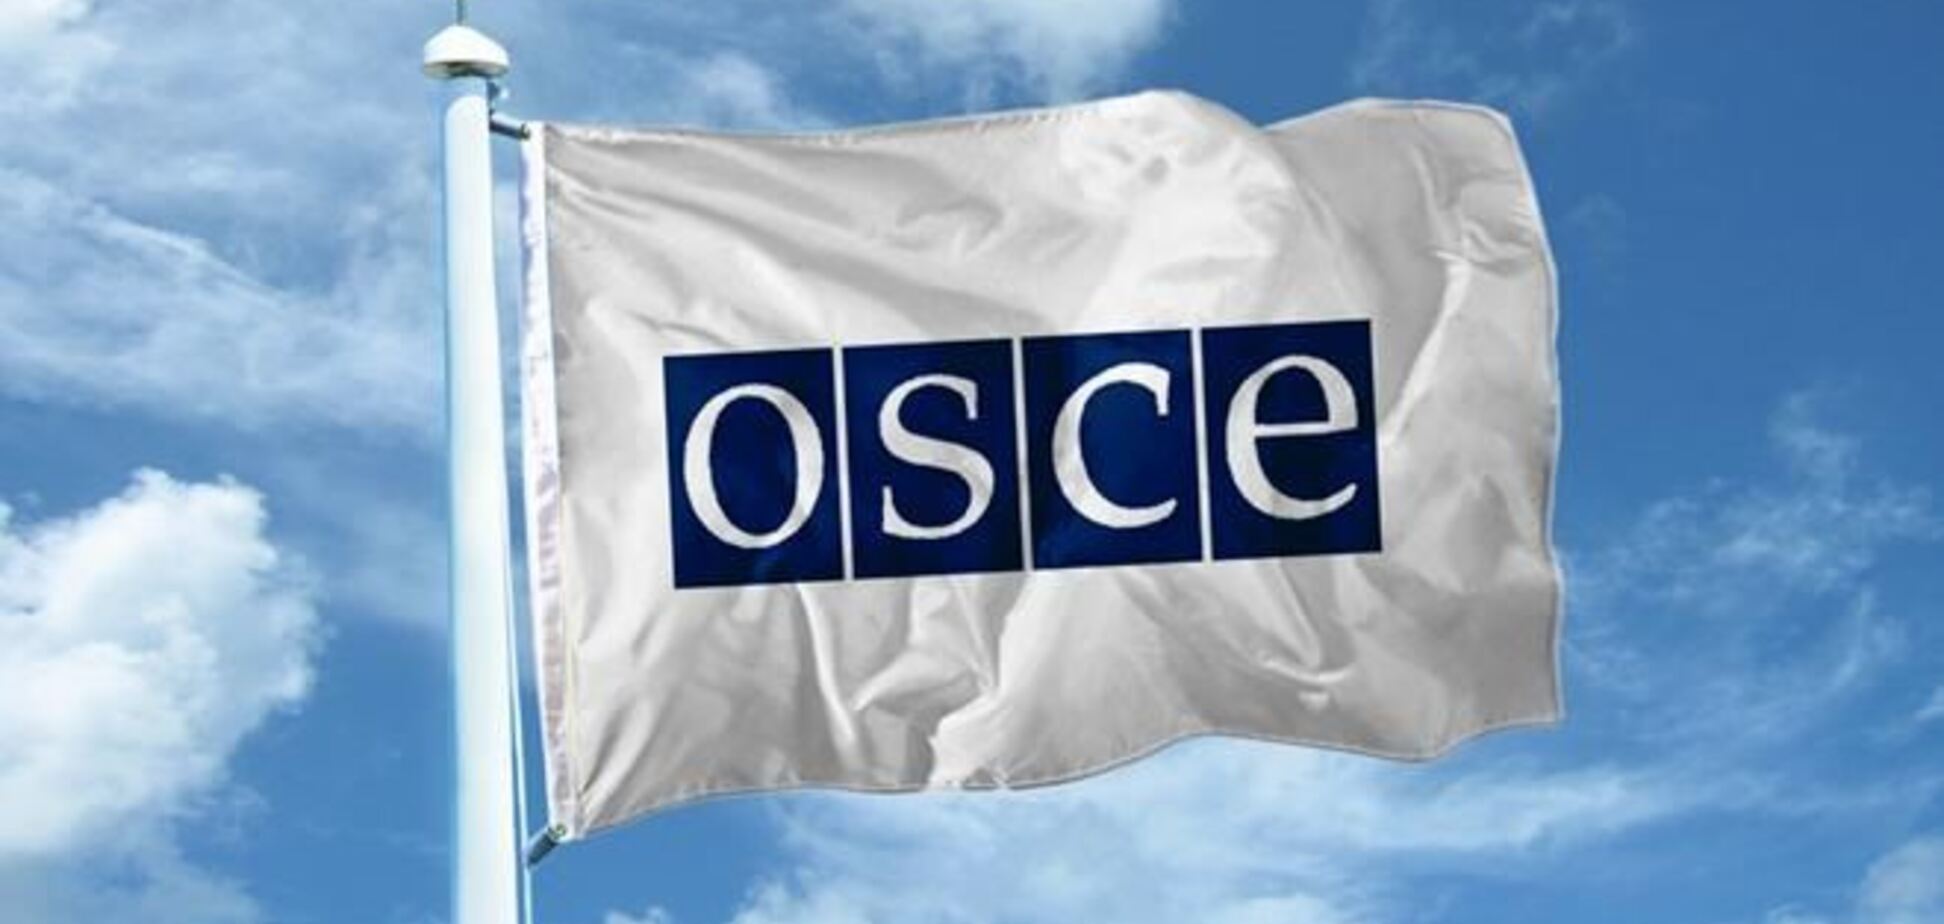 ОБСЄ закликала не заважати роботі журналістів у Криму і на сході України